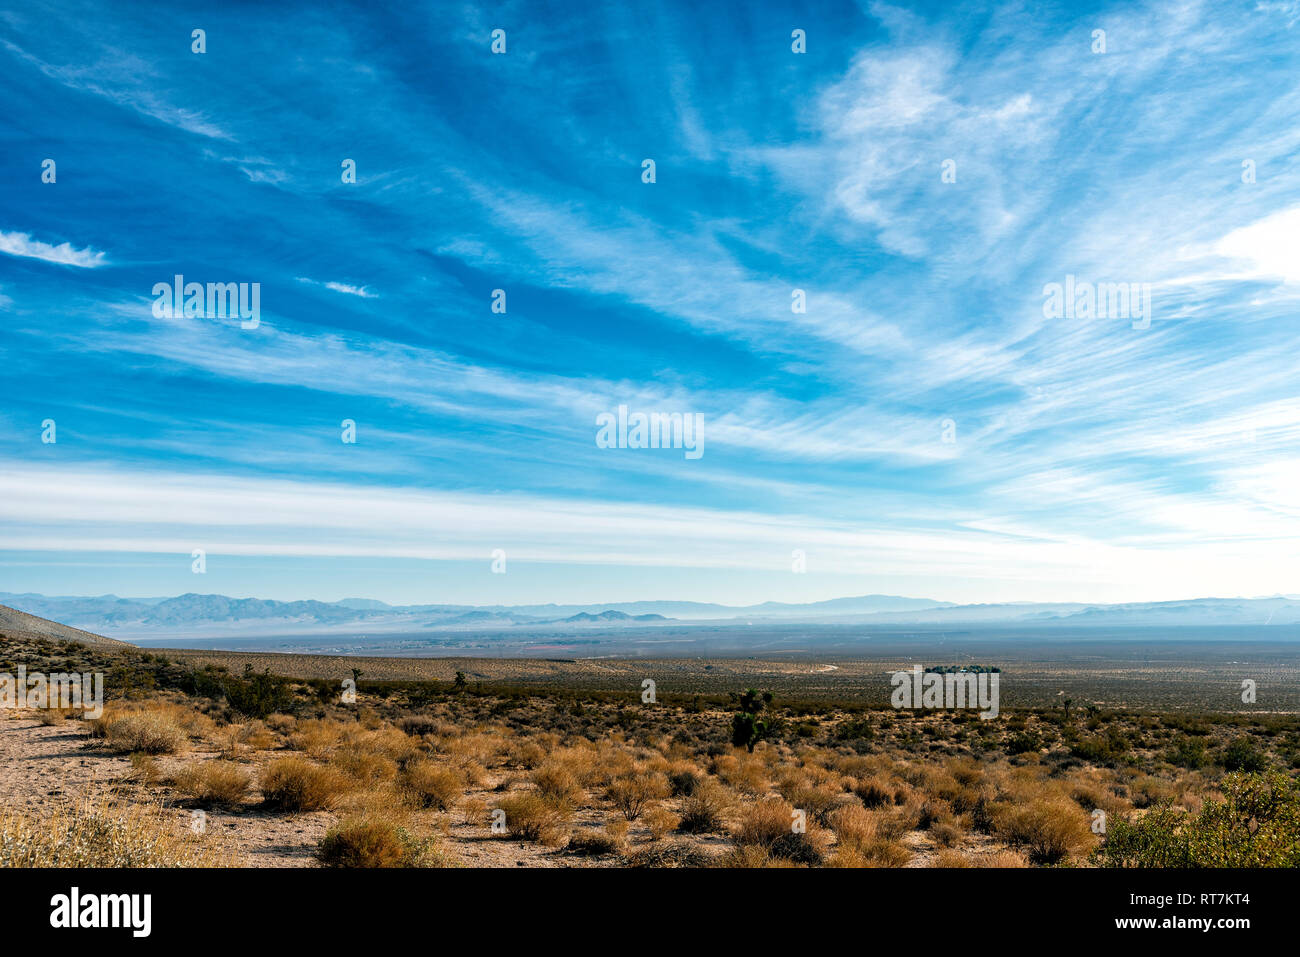 Paysage de la vallée du désert avec ciel voilé les montagnes au loin sous un ciel bleu clair avec des nuages blancs. Banque D'Images